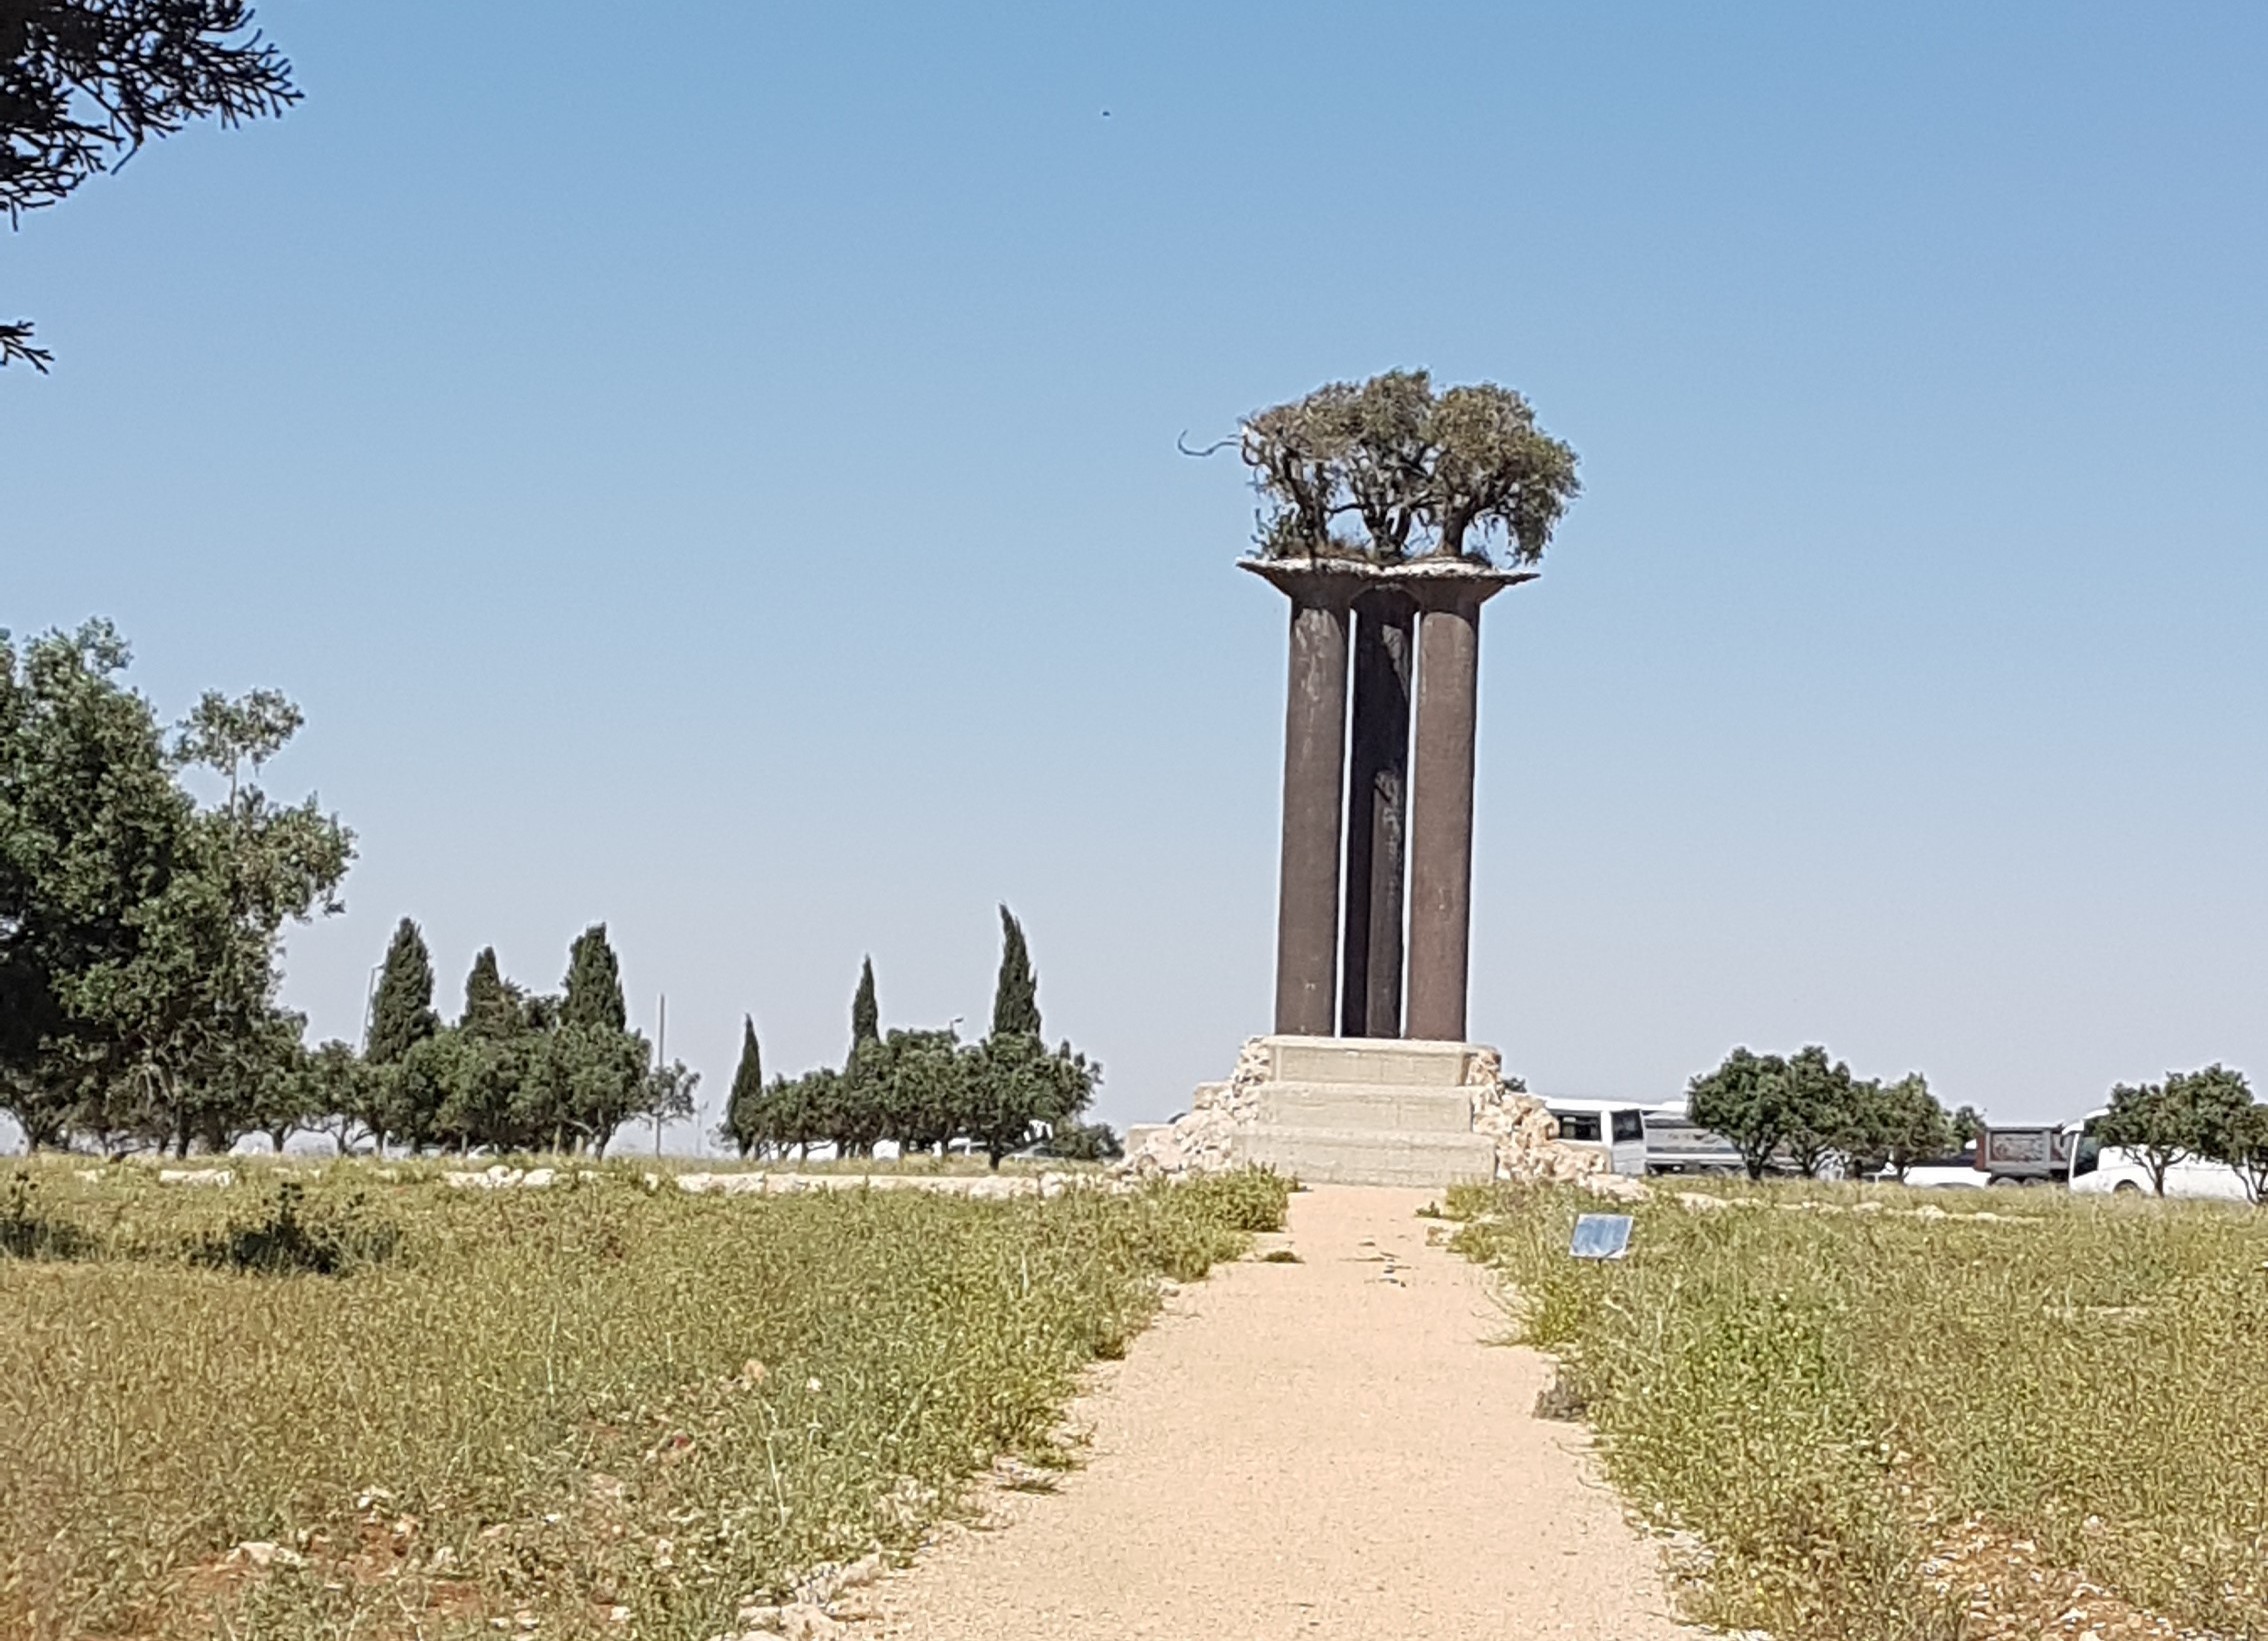  Монумент оливковым деревьям. Фото: Мира Зер